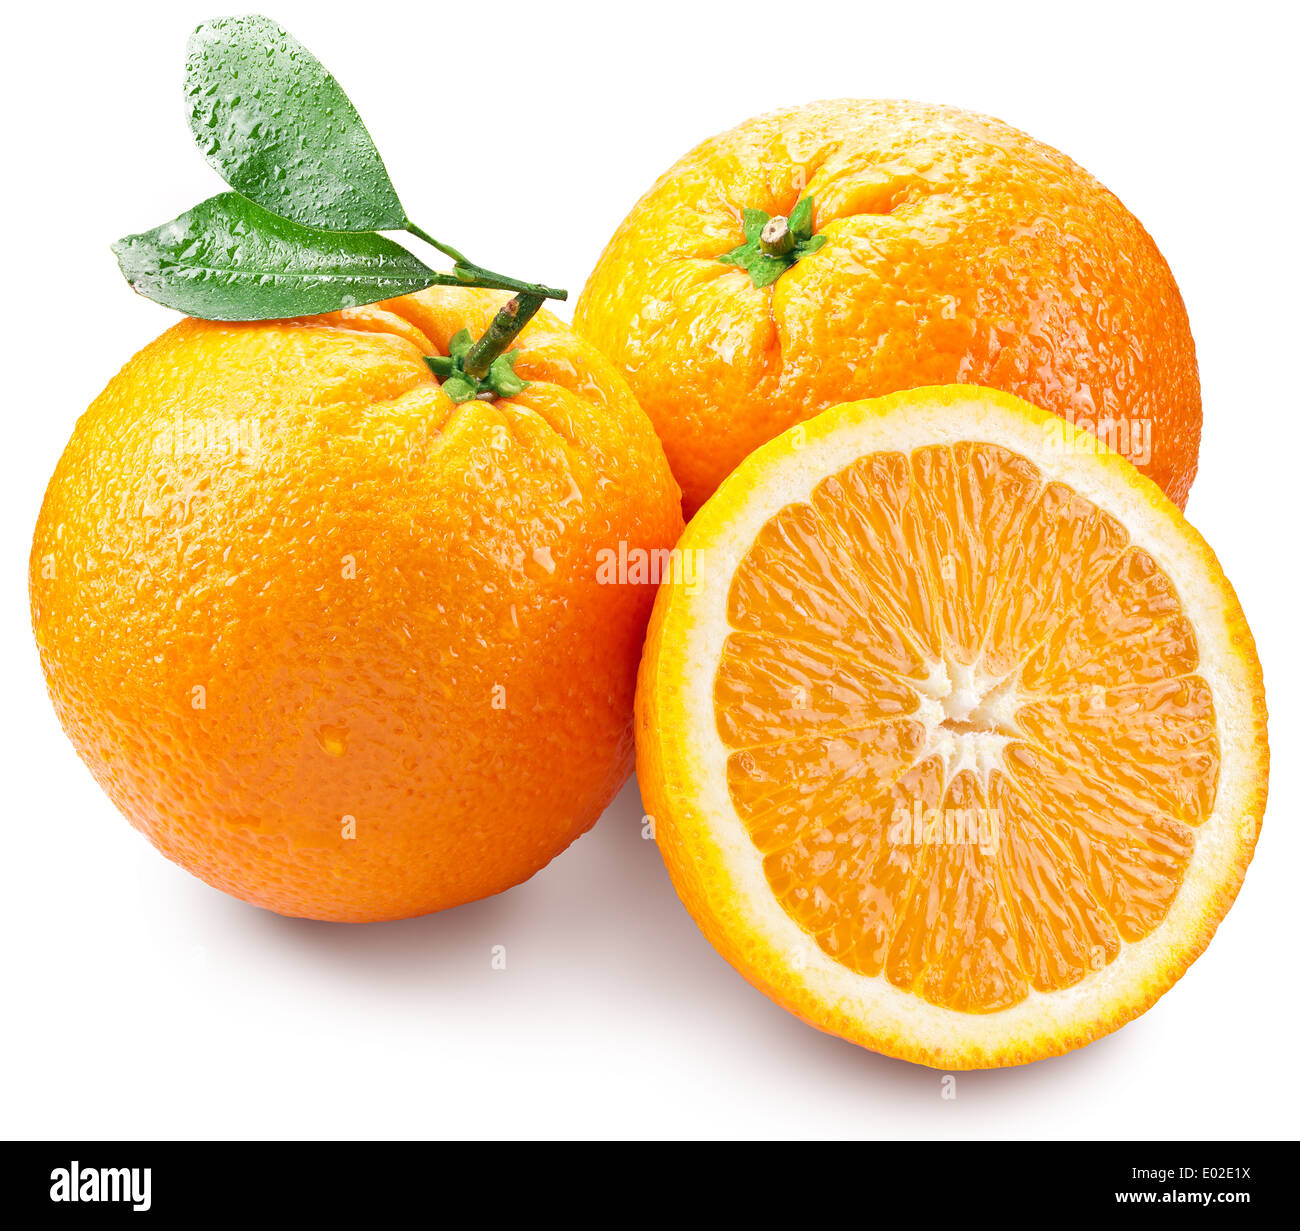 Les oranges avec slice et feuilles isolées sur un fond blanc. Image avec une profondeur de champ maximale. Banque D'Images